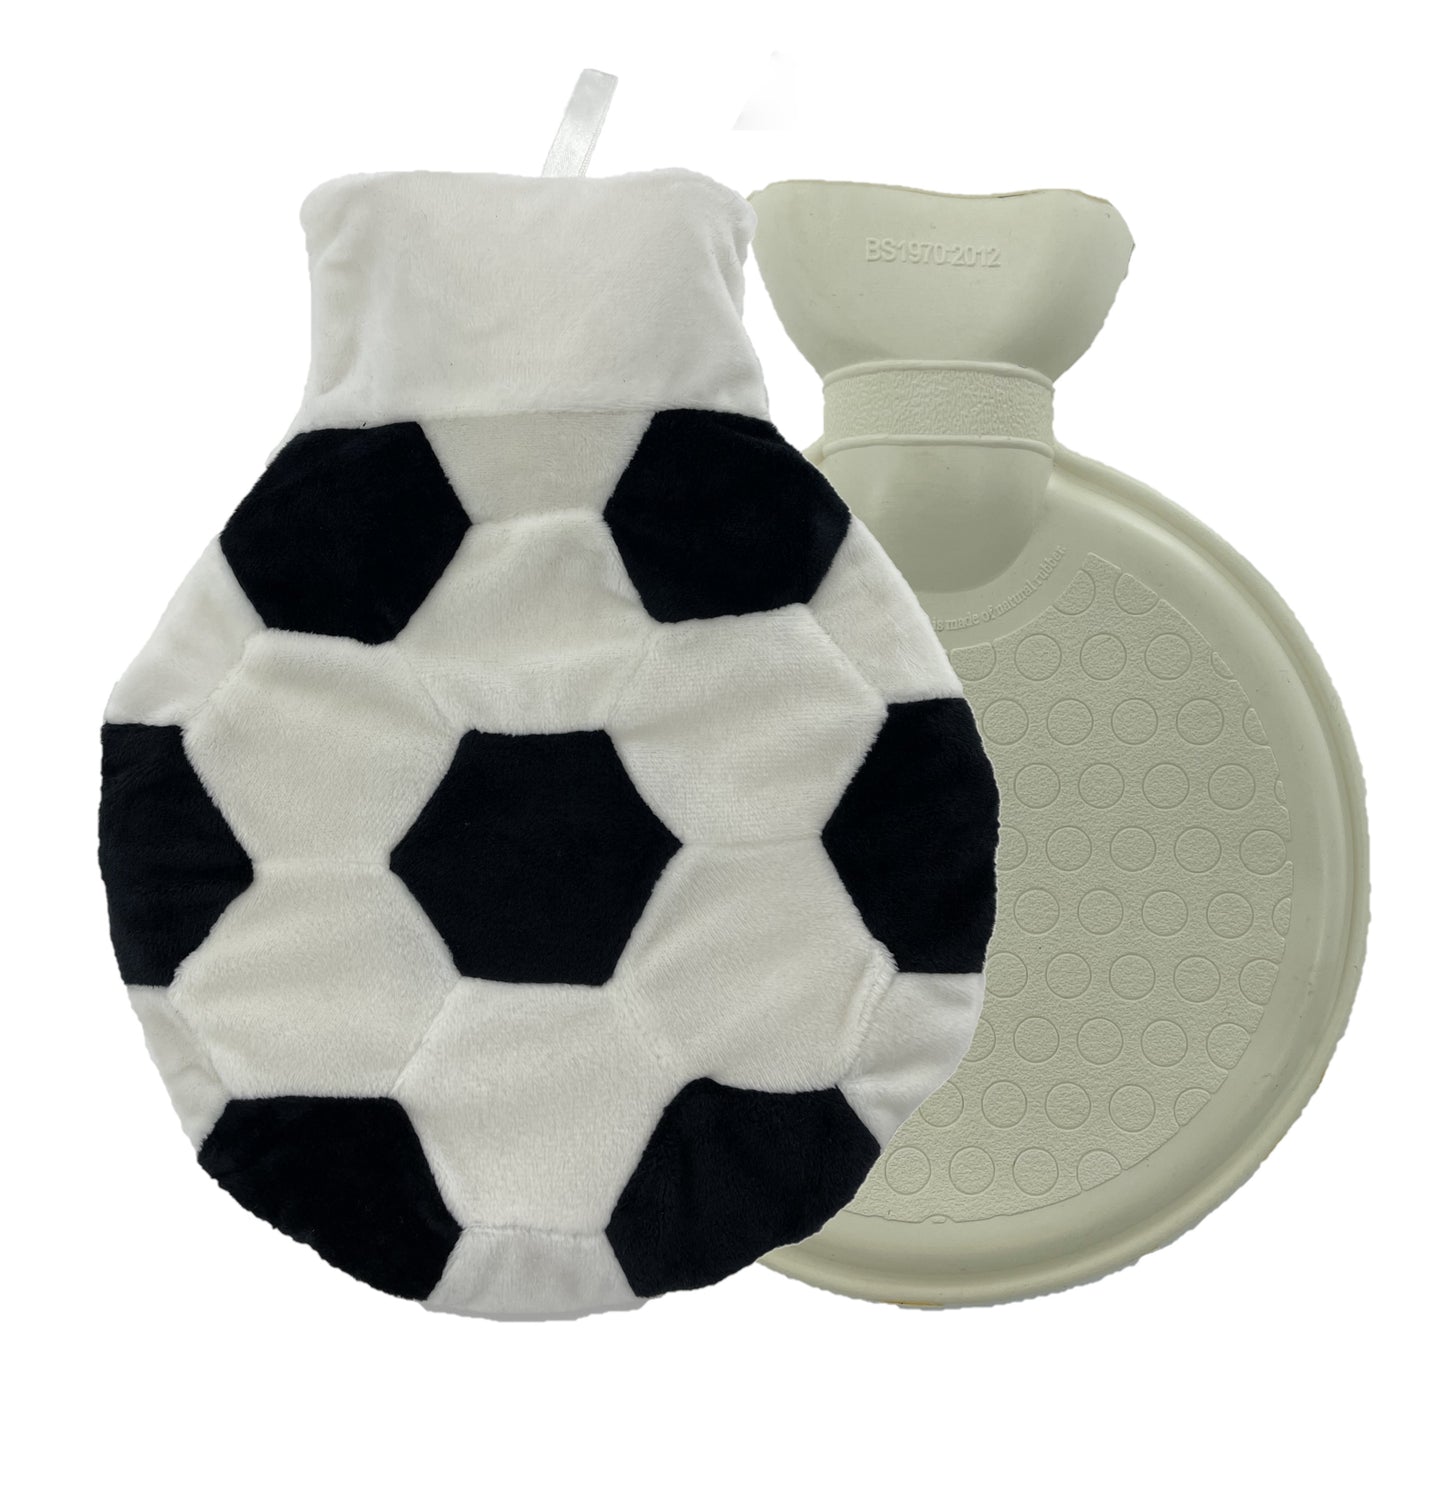 Football Design 1Lt Hot Water Bottle & Cover